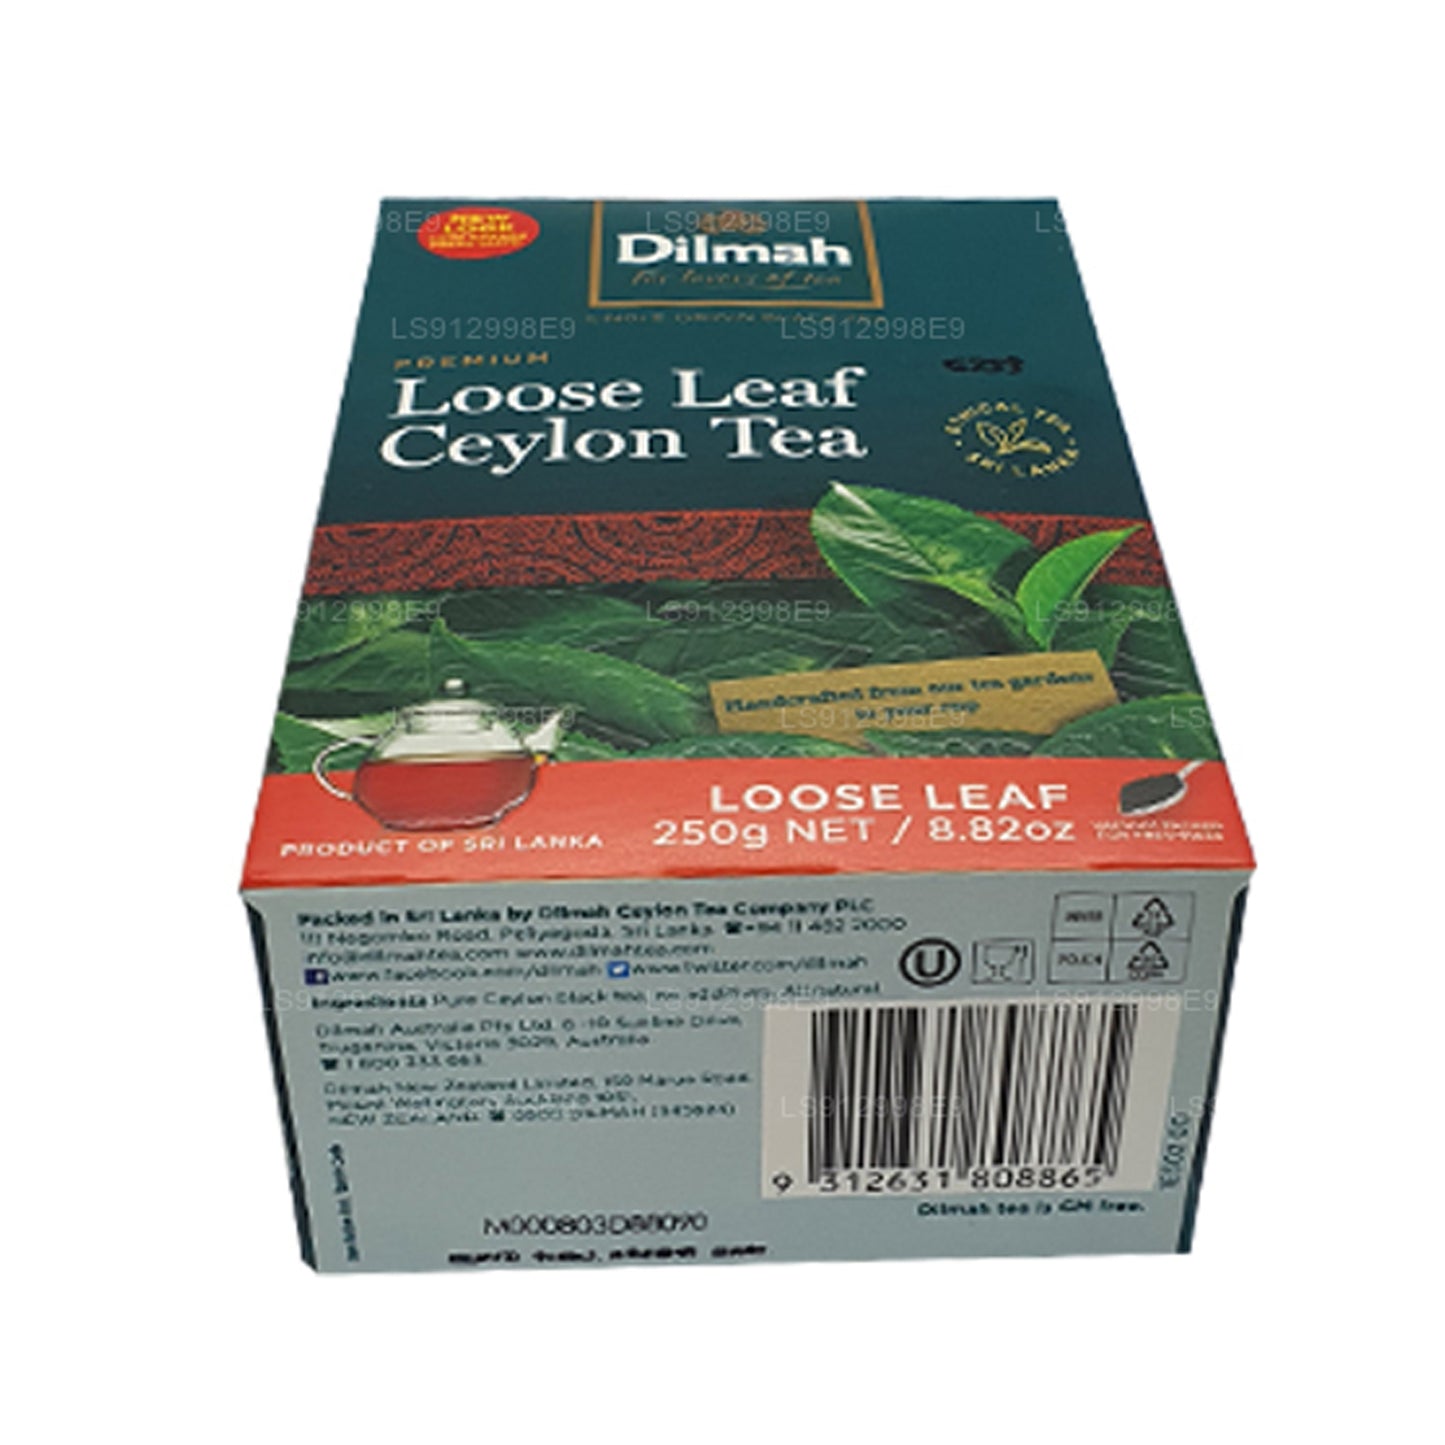 Tè sfuso Dilmah Premium Ceylon (125g)